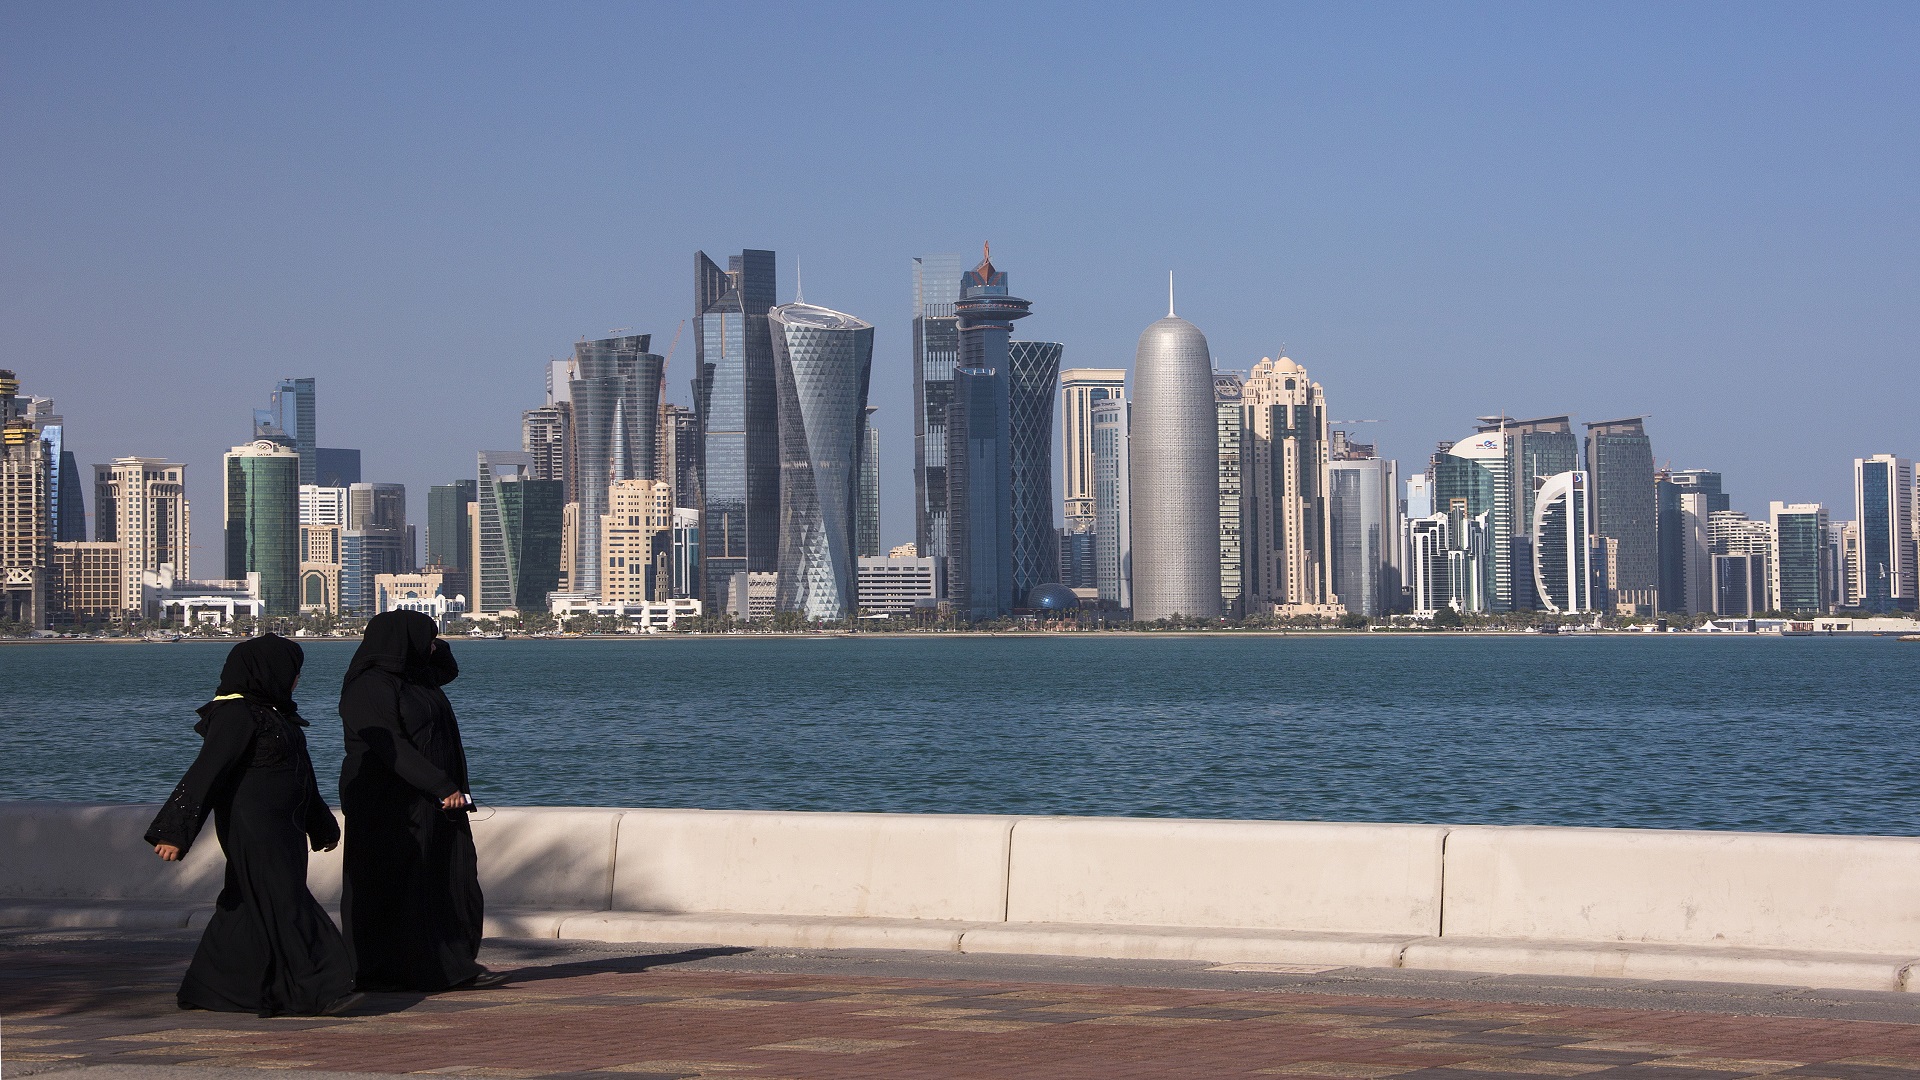 قطر: توجه لإقامة "عقد تأمين" اختياري على العمالة المنزلية